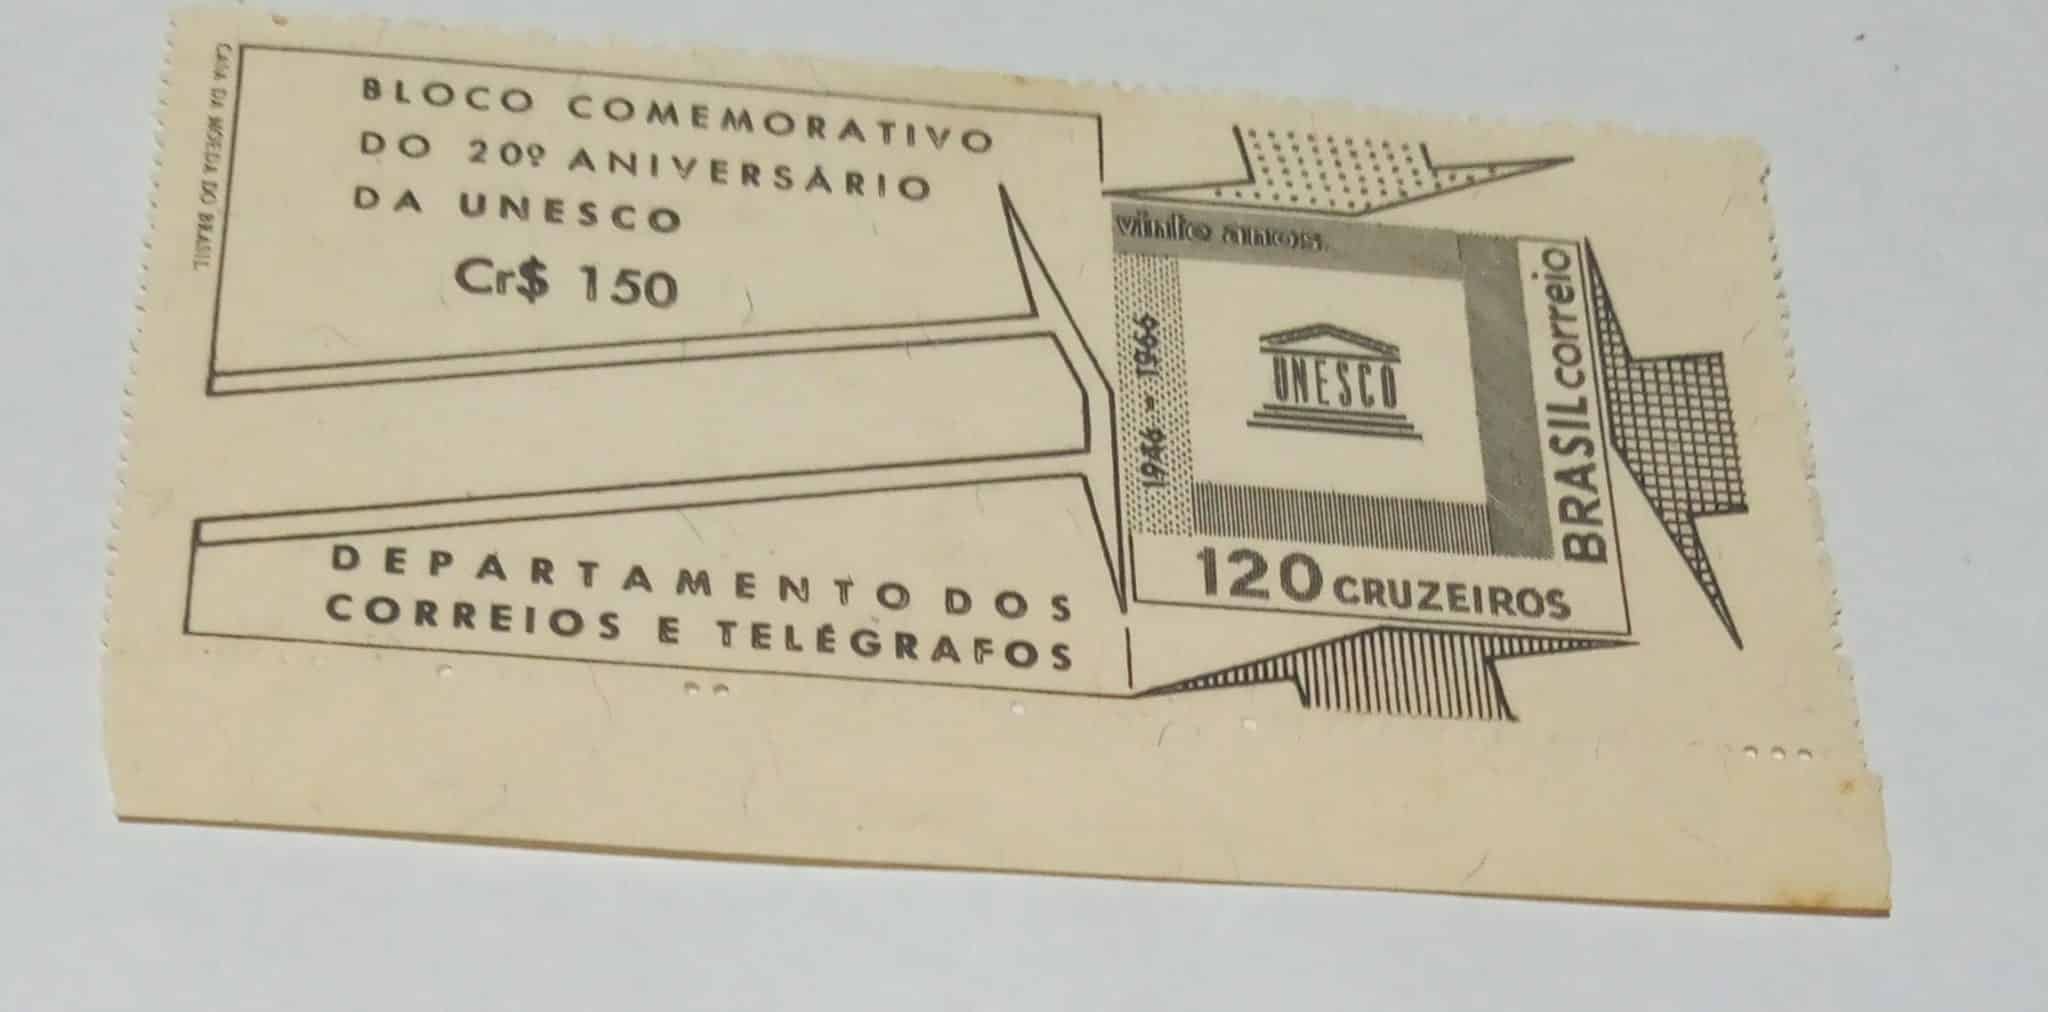 Selo Bloco Comemorativodo 20o Aniversario da Unesco 1946 1966 scaled Casa do Colecionador